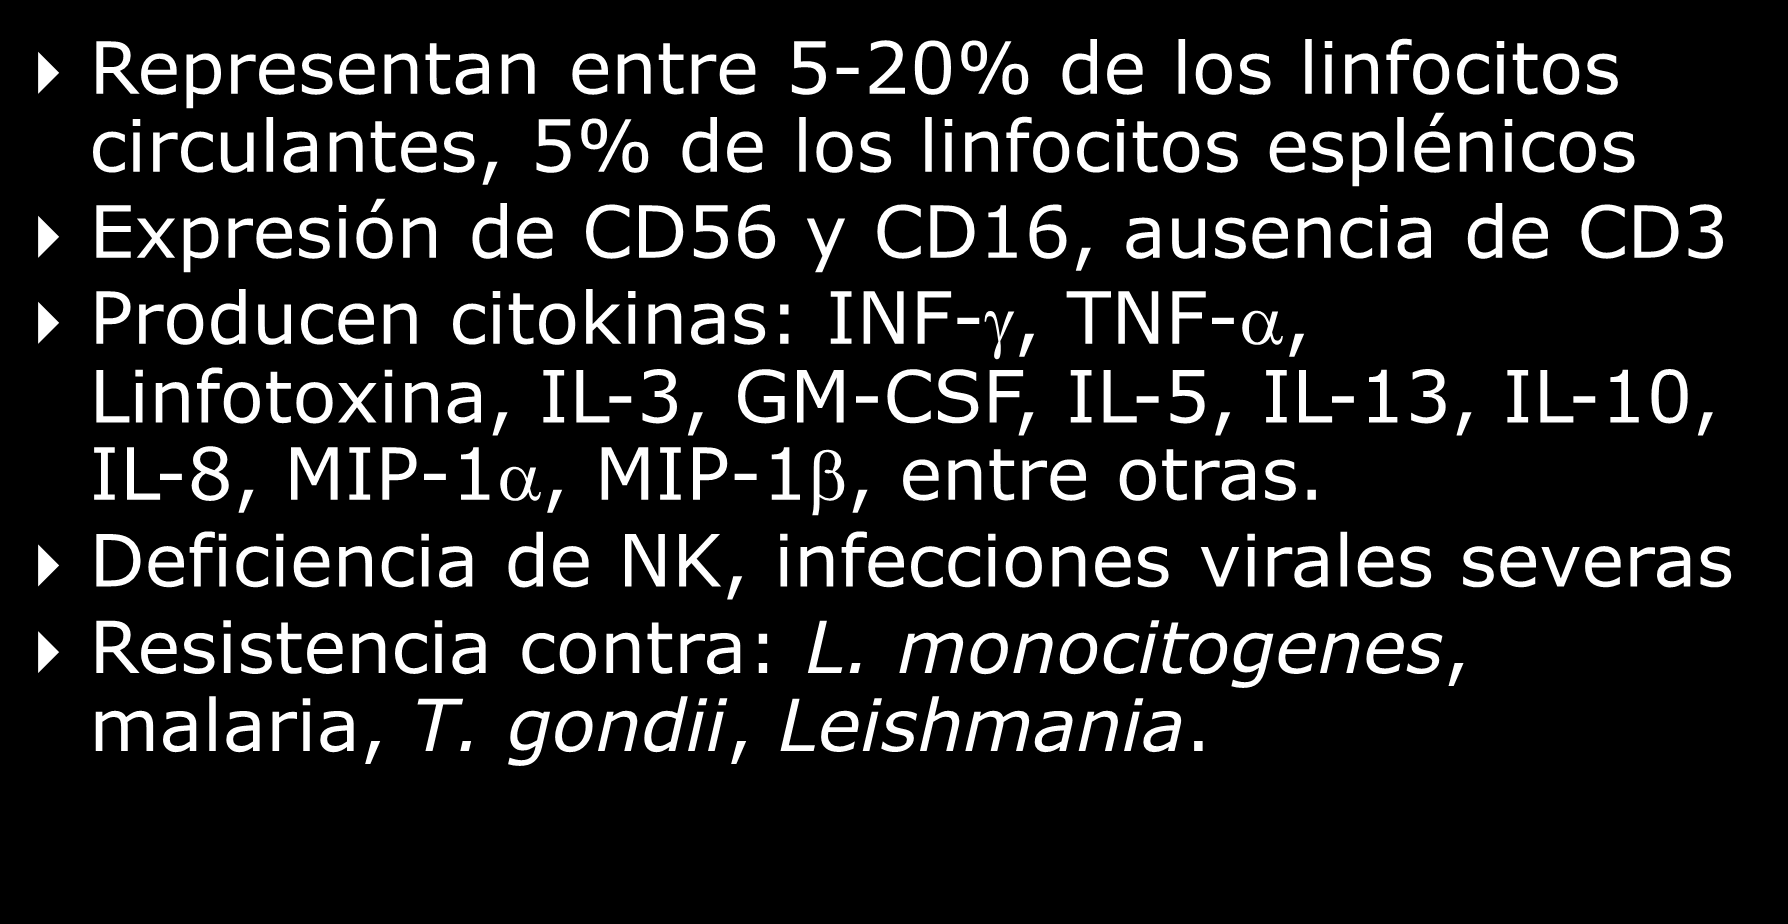 Lanier L, Clinical Immunology, 95:1, 2000 Origen y funciones de las células NK Representan entre 5-20% de los linfocitos circulantes, 5% de los linfocitos esplénicos Expresión de CD56 y CD16,